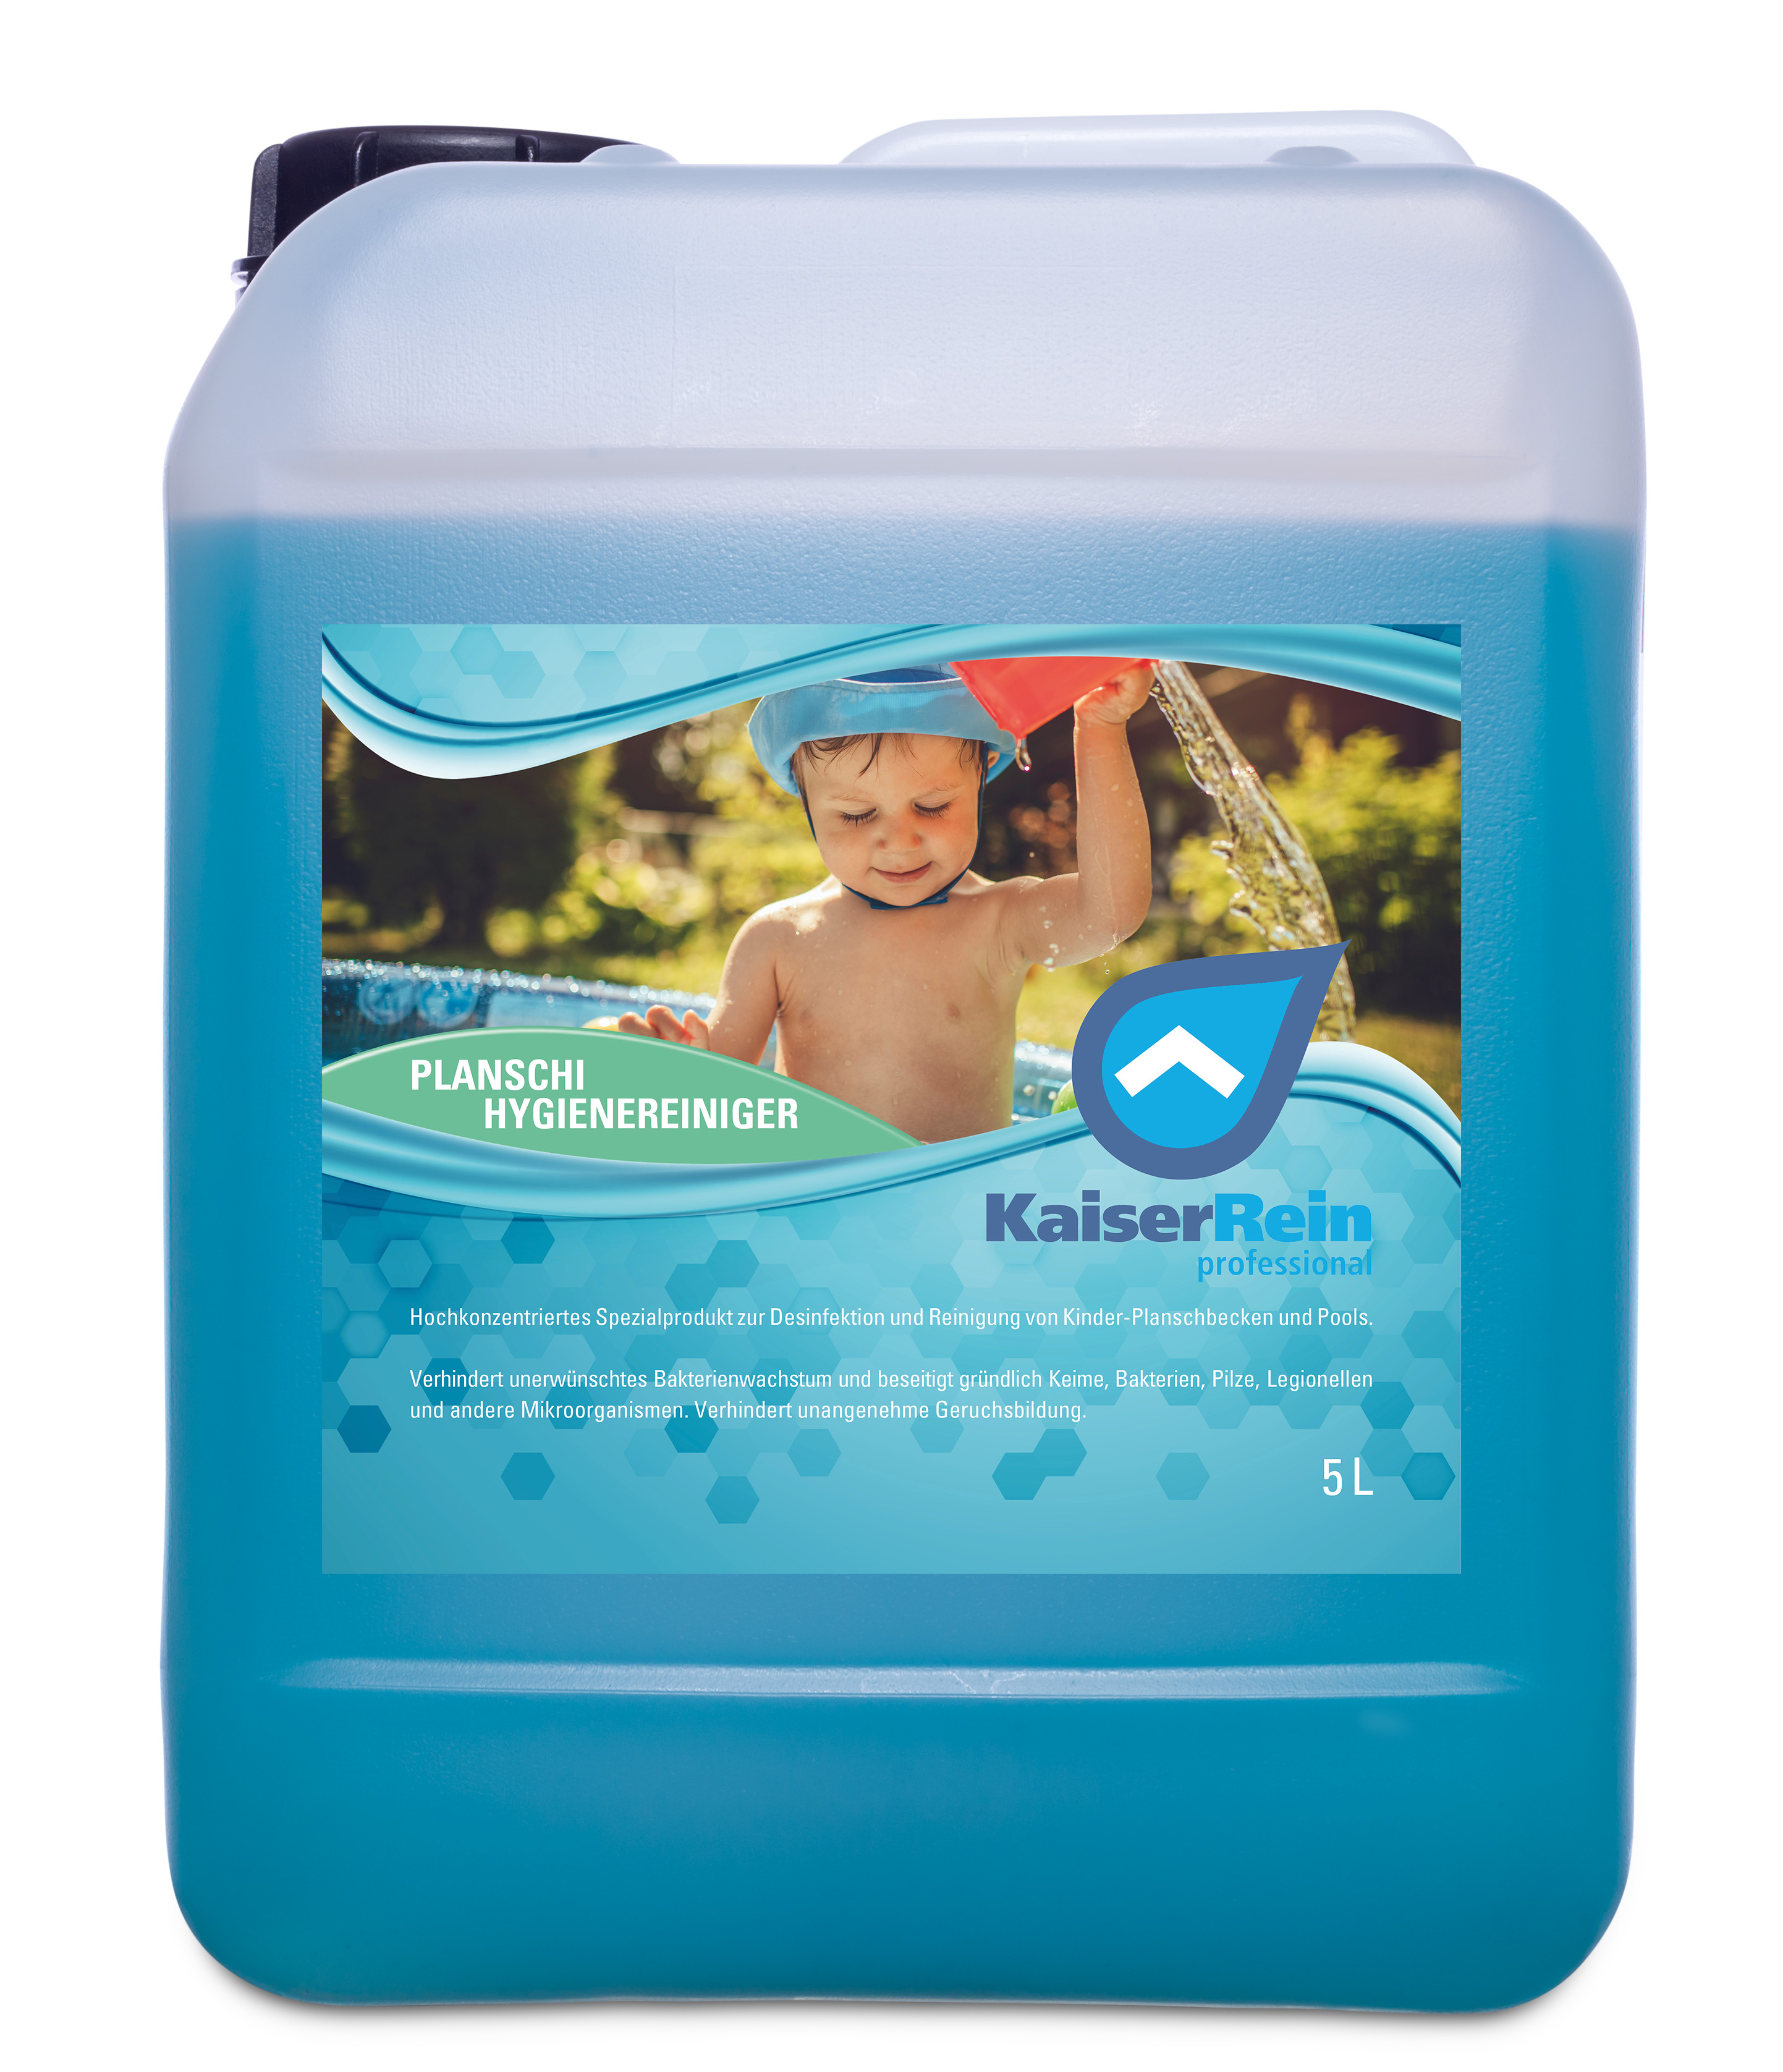 Planschi 5 L Kanister Spezialprodukt zur Desinfektion und Reinigung von Kinder- Planschbecken